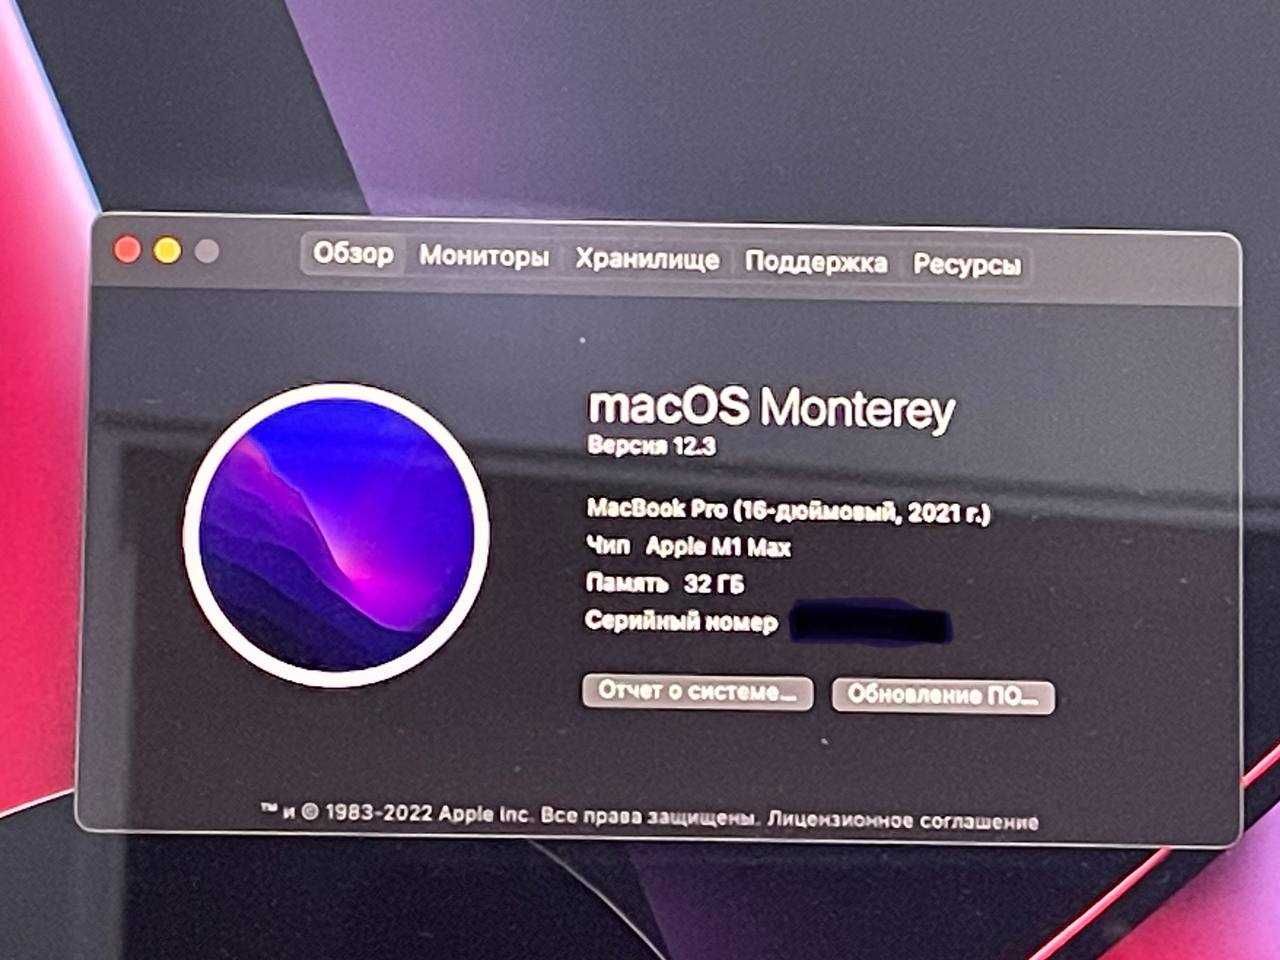 Macbook pro m1 max 36/1tb  новый 14 августа купил